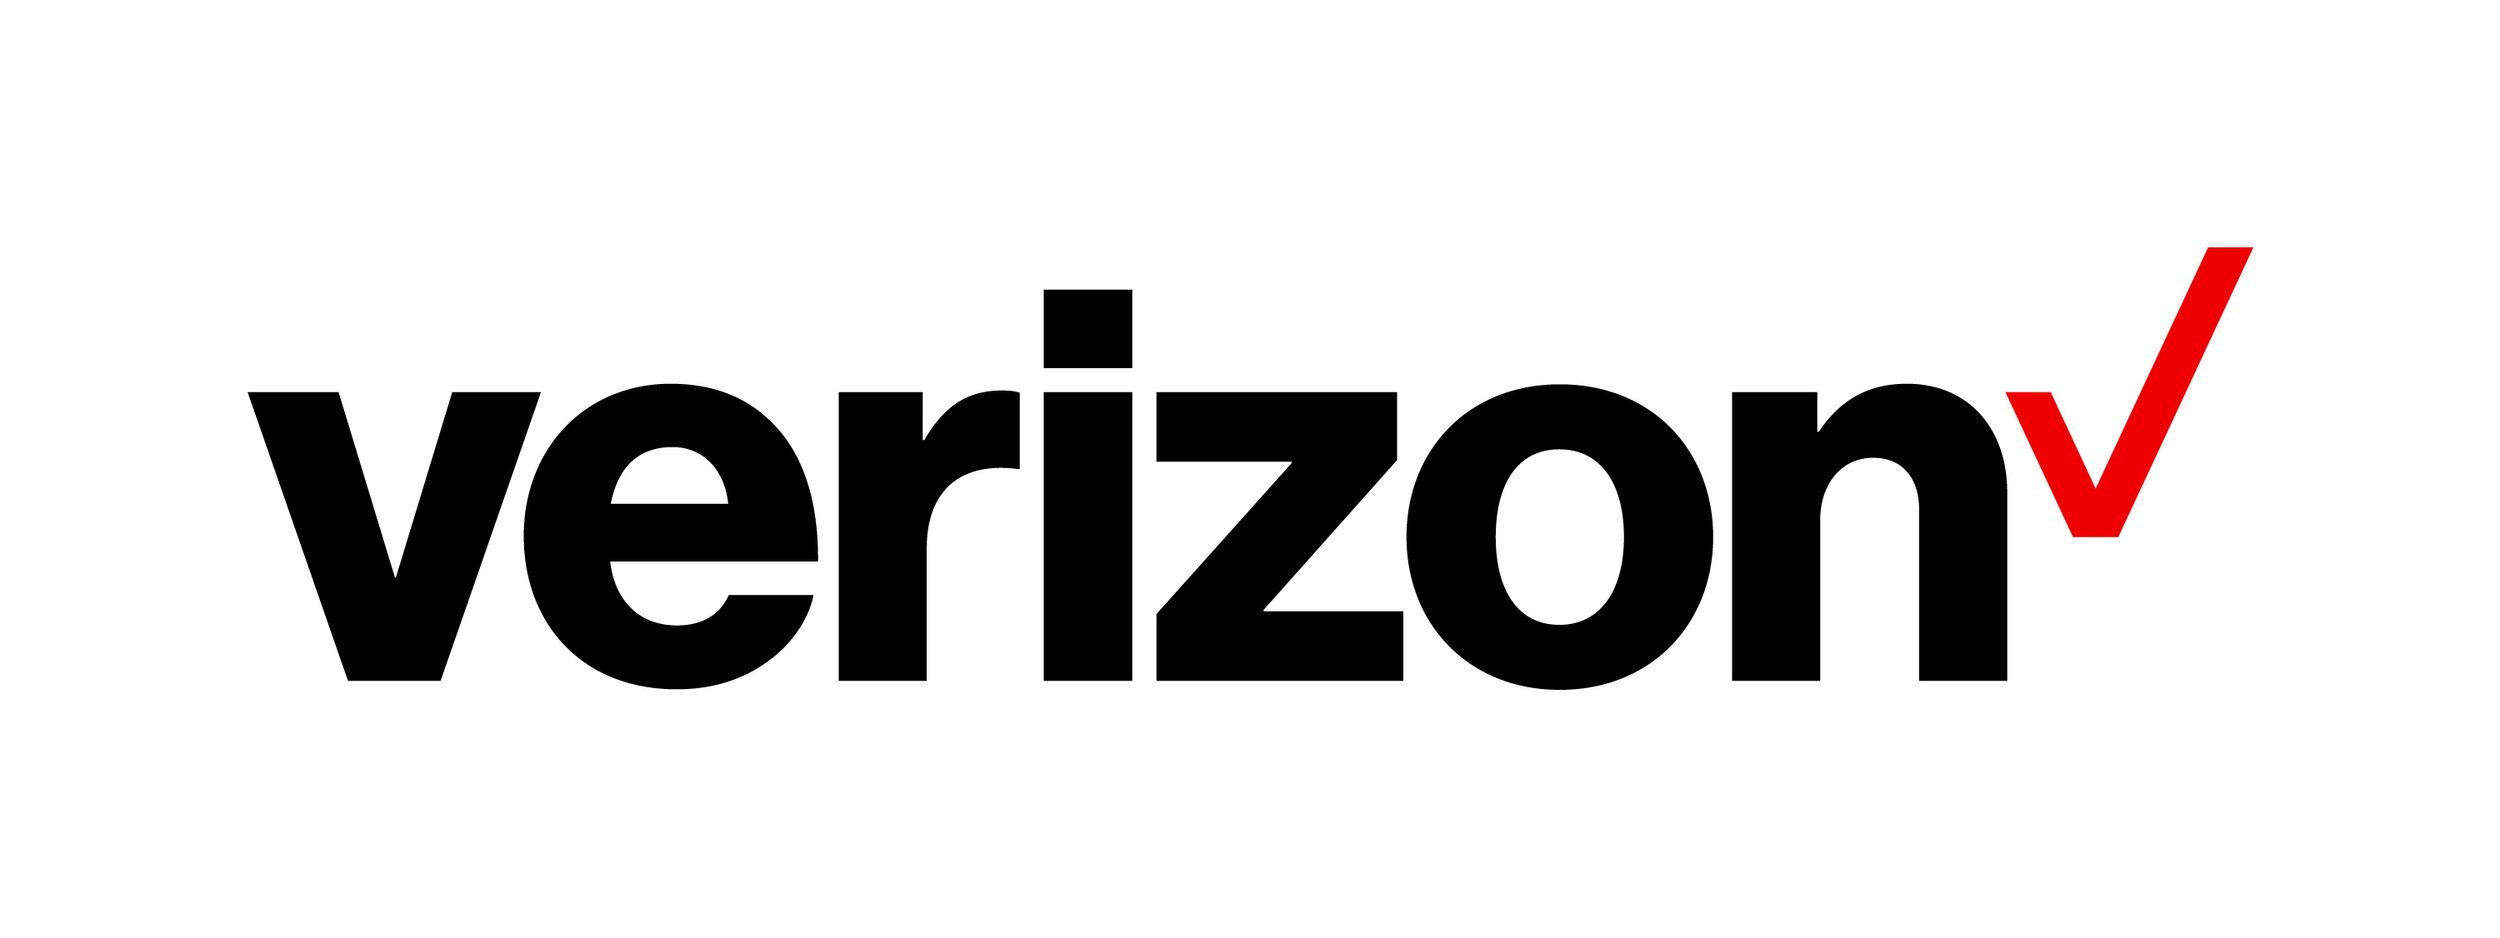 Verizon Wireless LOGO.jpg